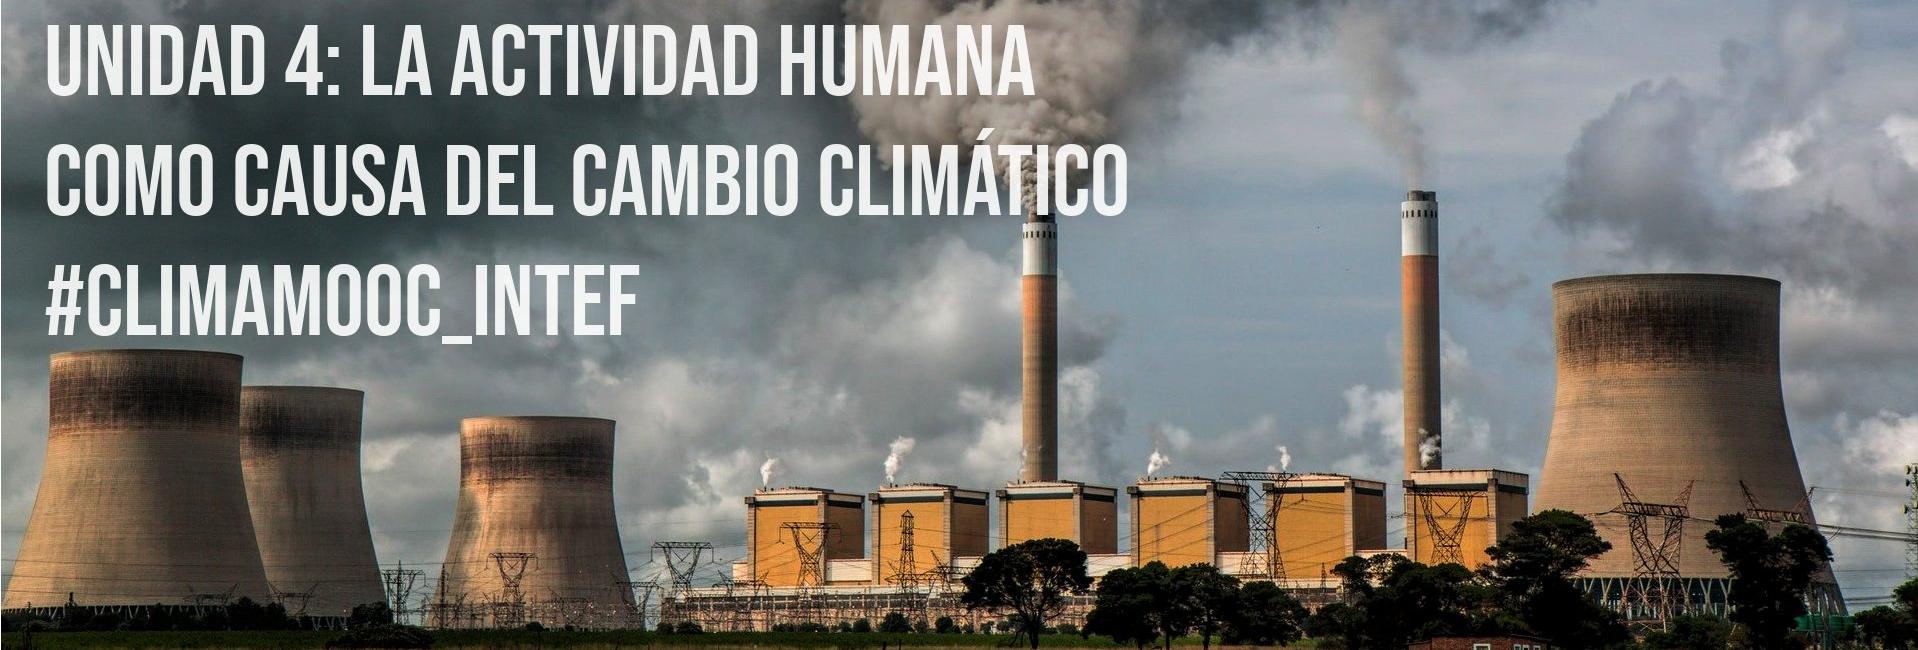 #ClimaMOOC_INTEF, Unidad 4: La actividad humana como causa del cambio climático